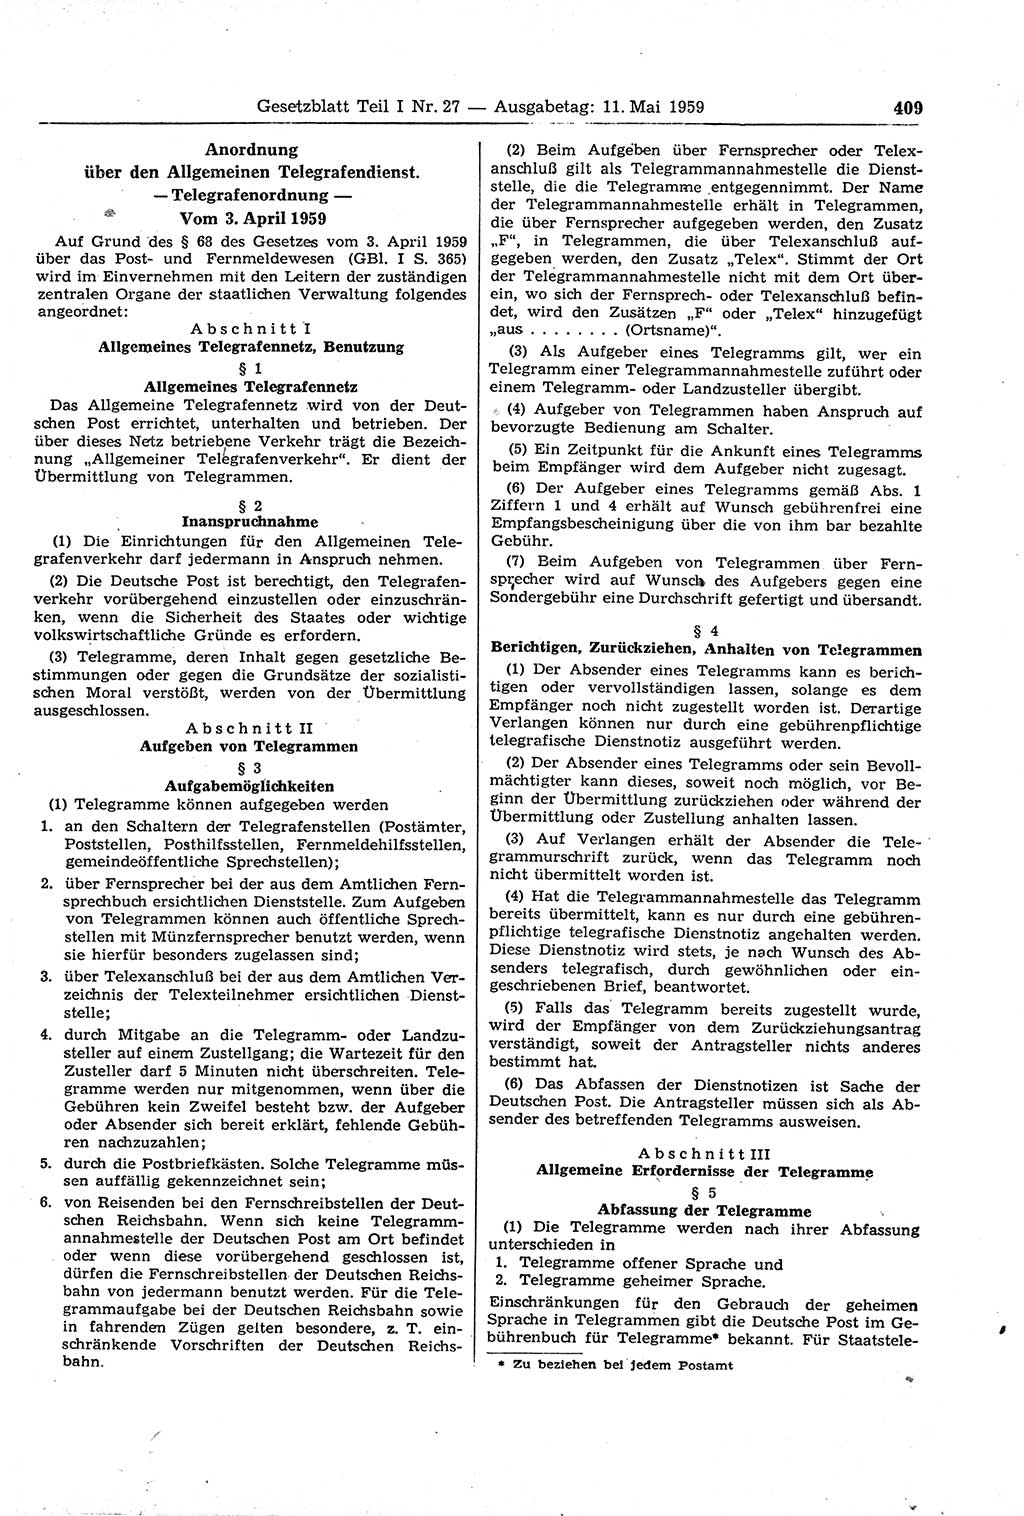 Gesetzblatt (GBl.) der Deutschen Demokratischen Republik (DDR) Teil Ⅰ 1959, Seite 409 (GBl. DDR Ⅰ 1959, S. 409)